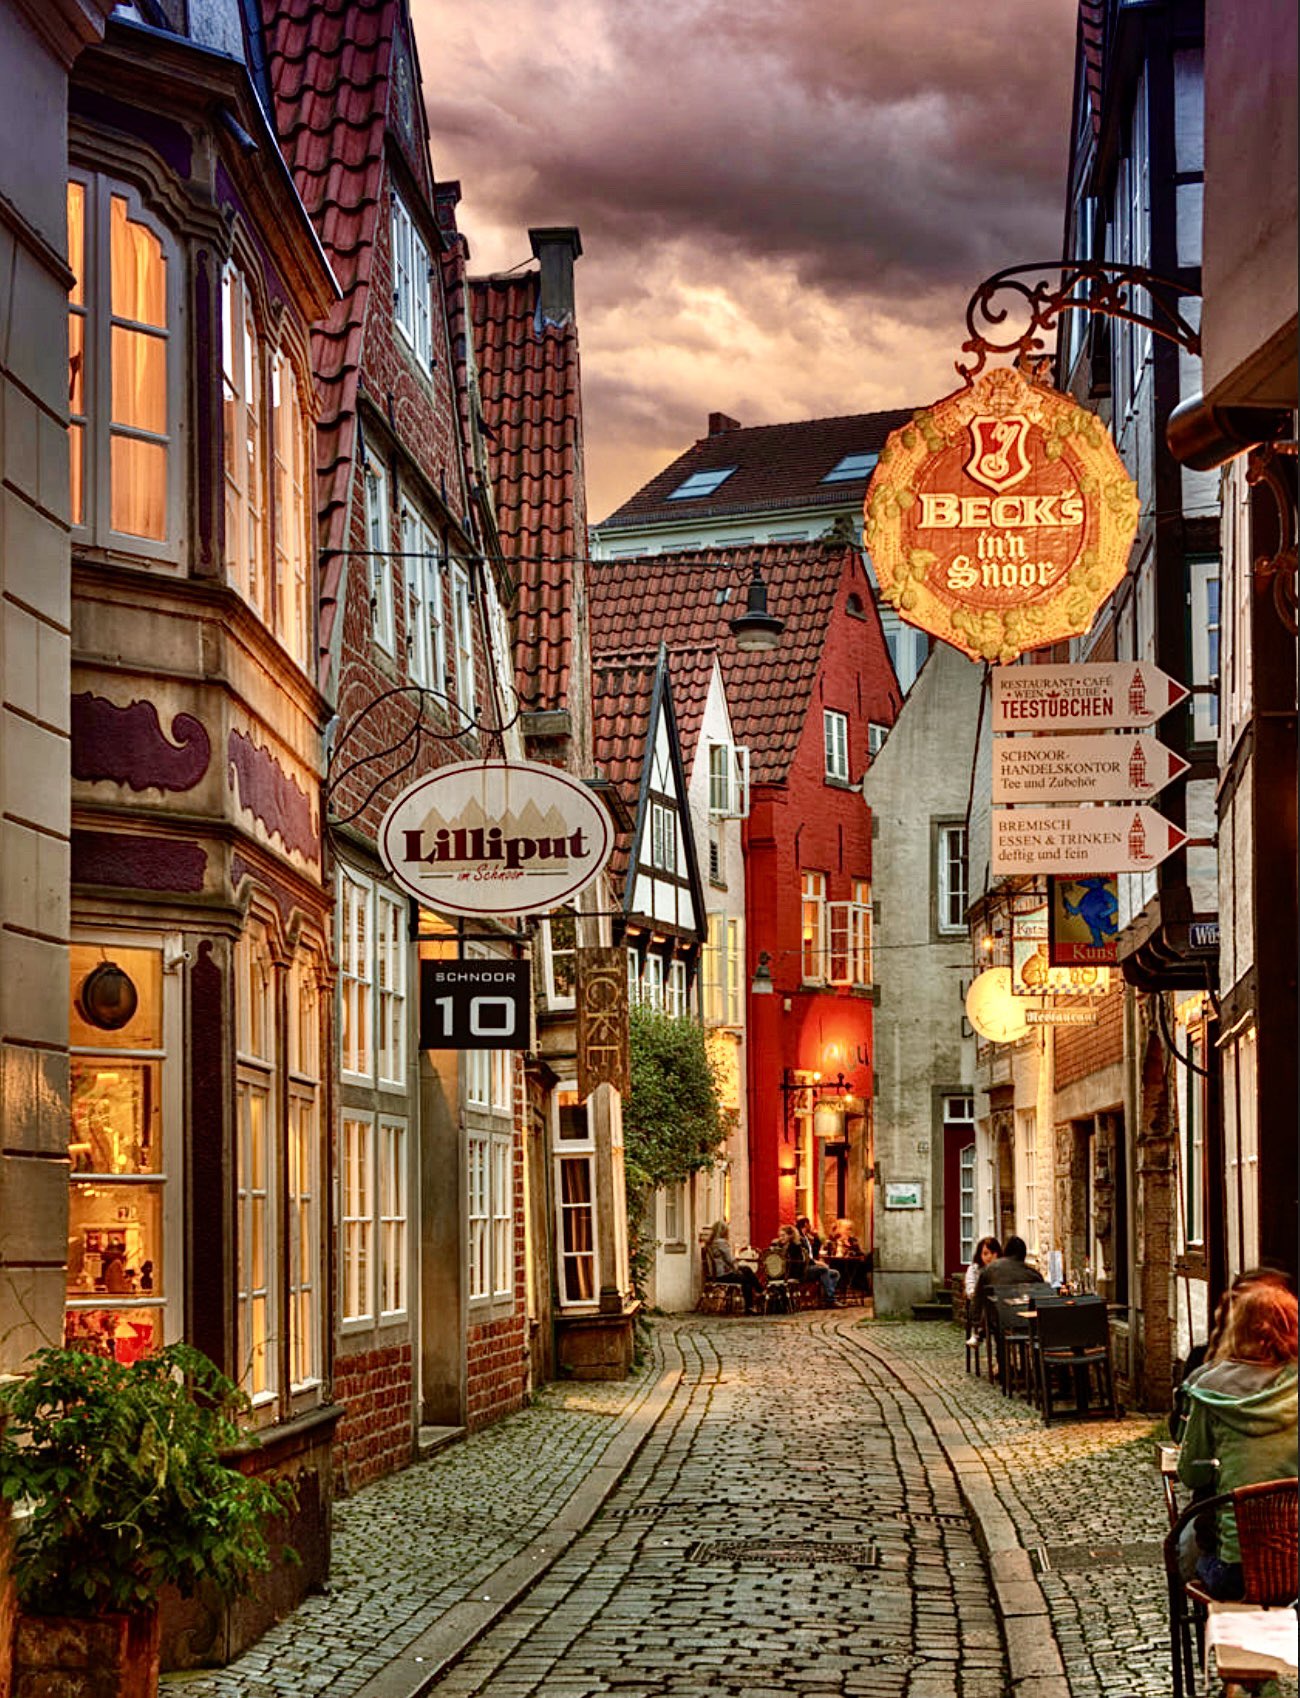 Ellen Vlady Bremen City Of The World Famous Fairytale Musicians C Alexander Riek T Co Hk0zadokf0 Twitter